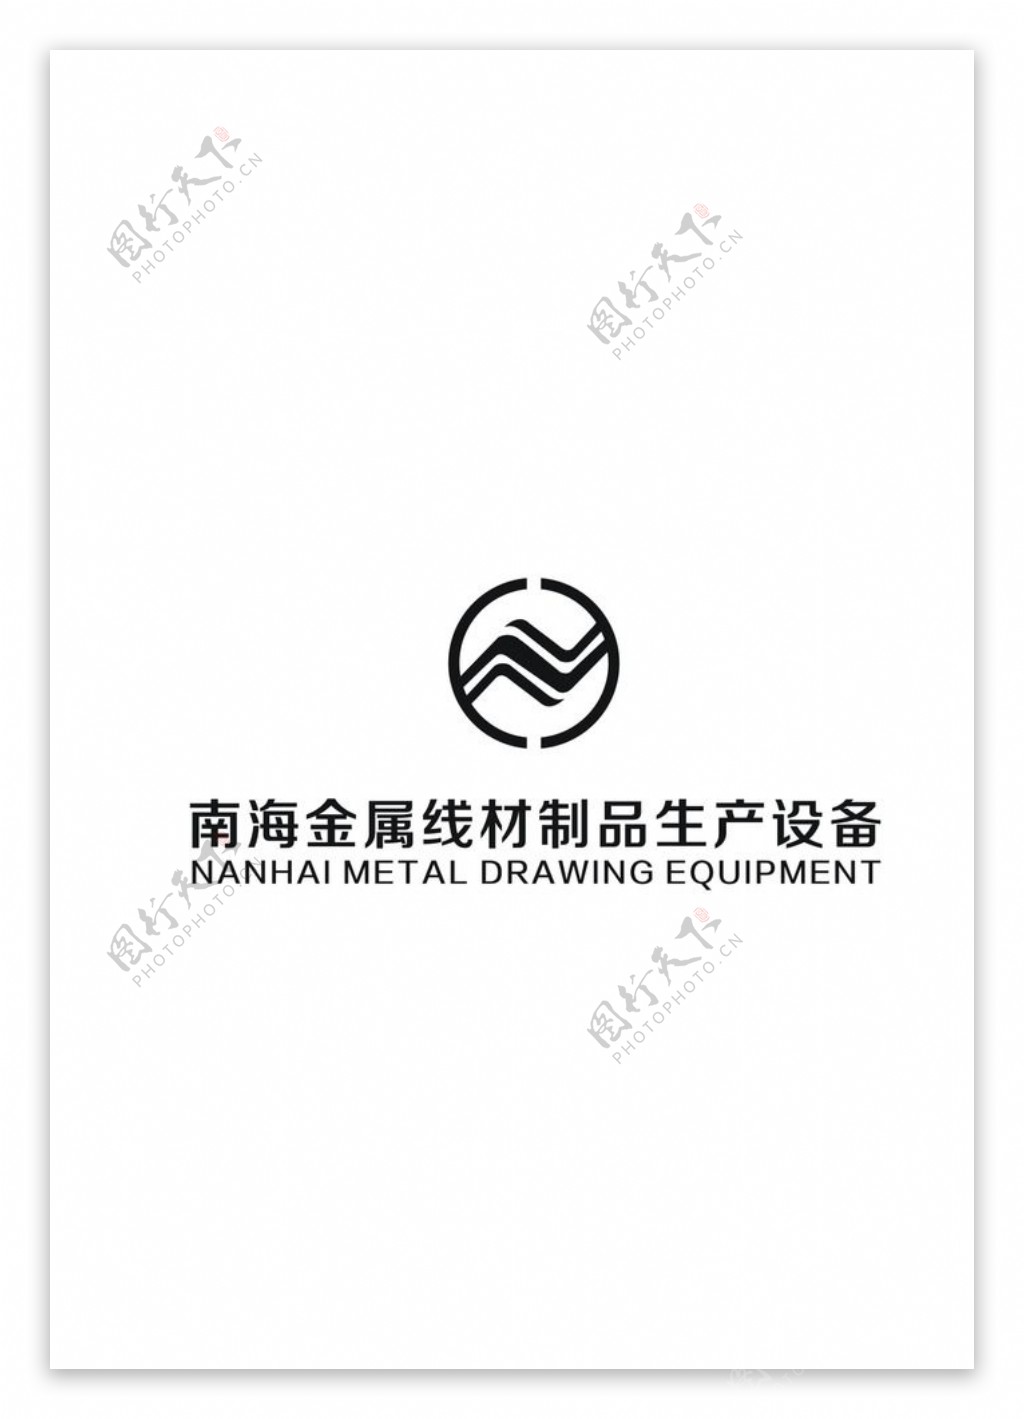 南海金属线材制品生产设备标志